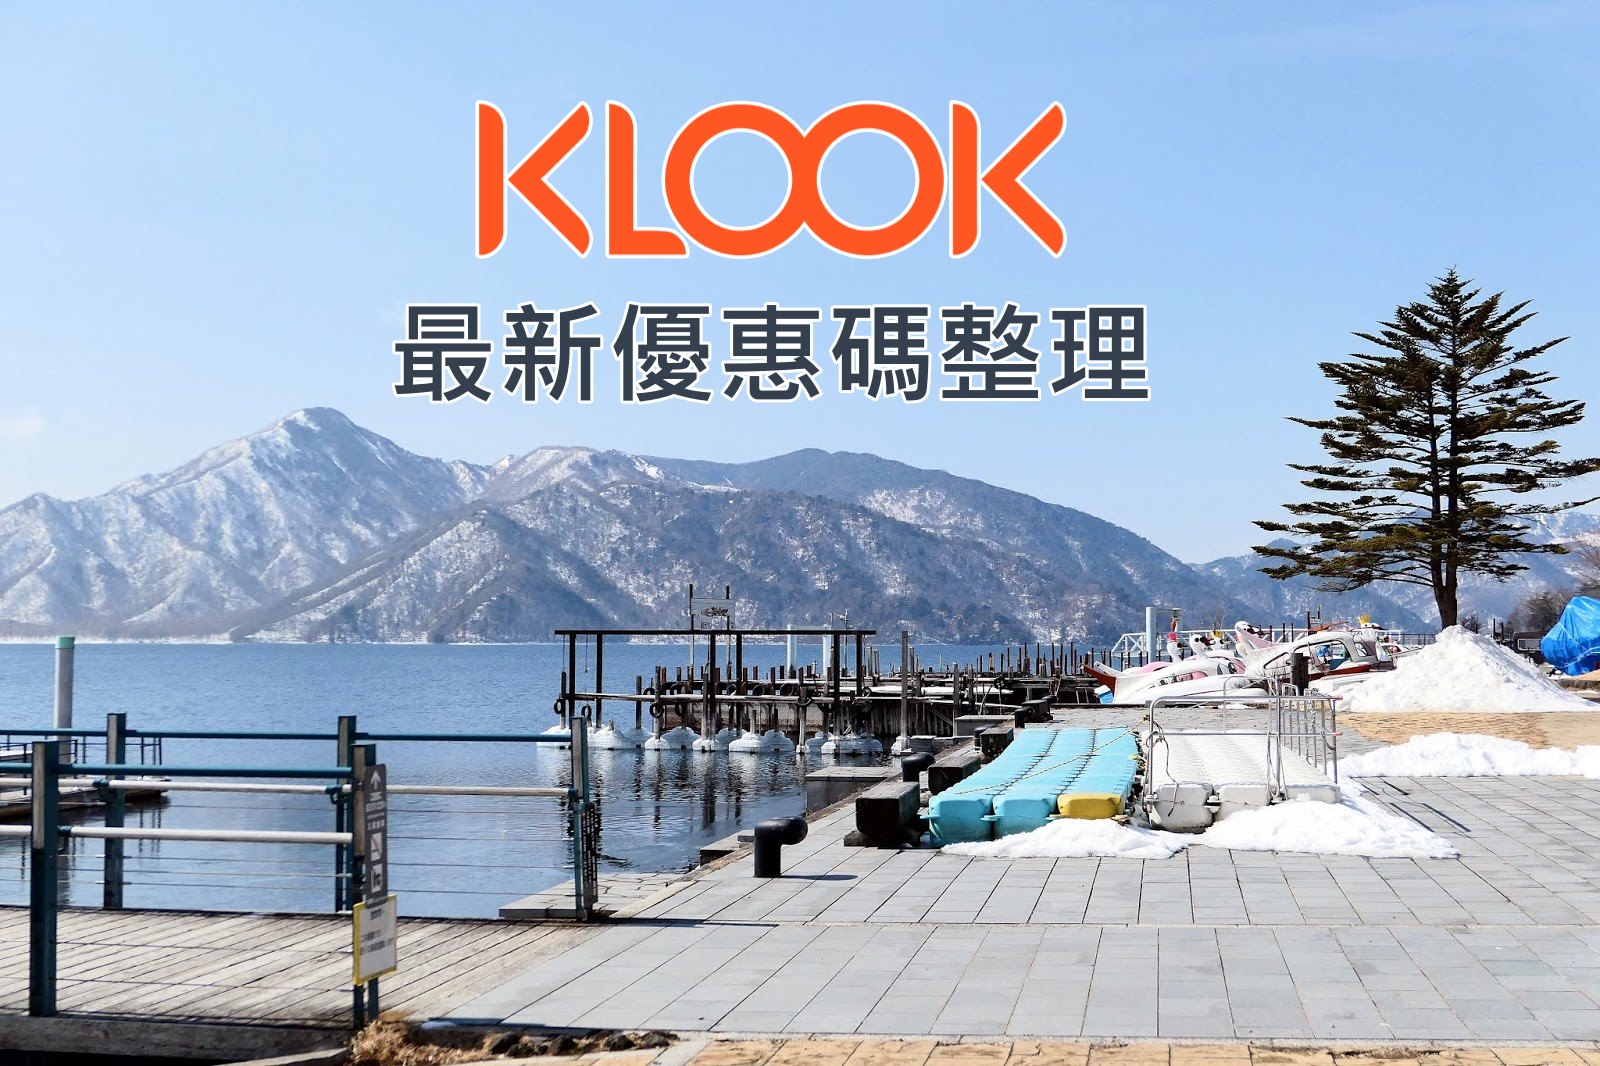 【最新KLOOK優惠碼】2022/09 KLOOK客路折扣碼/優惠活動整理